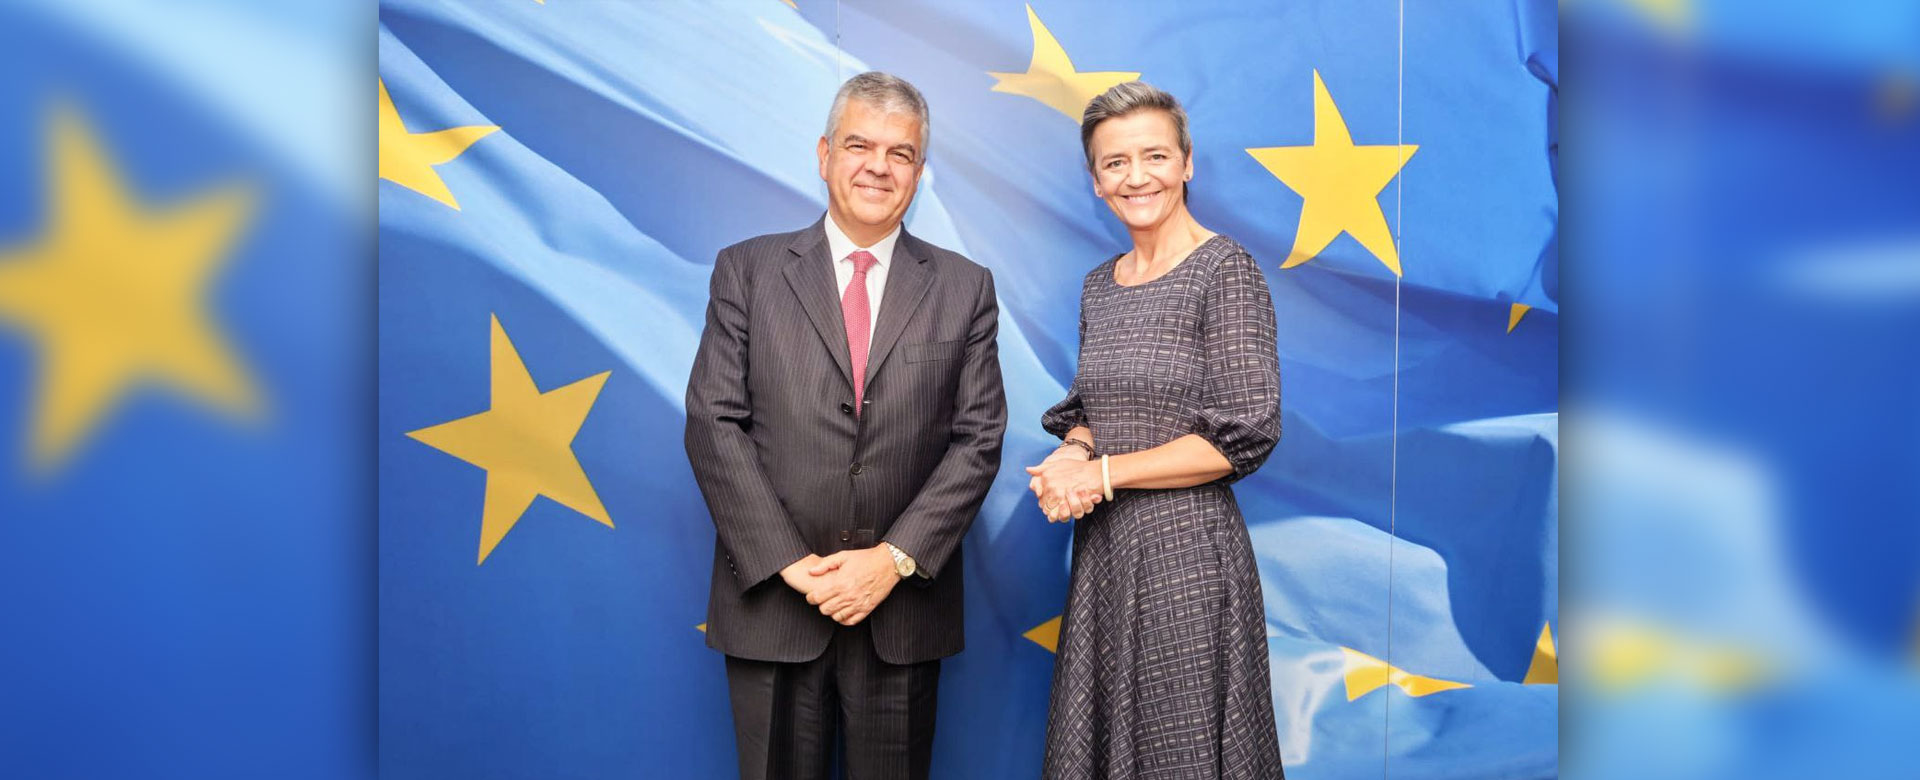 Luigi Ferraris, AD del Gruppo FS, incontra a Bruxelles Margrethe Vestager